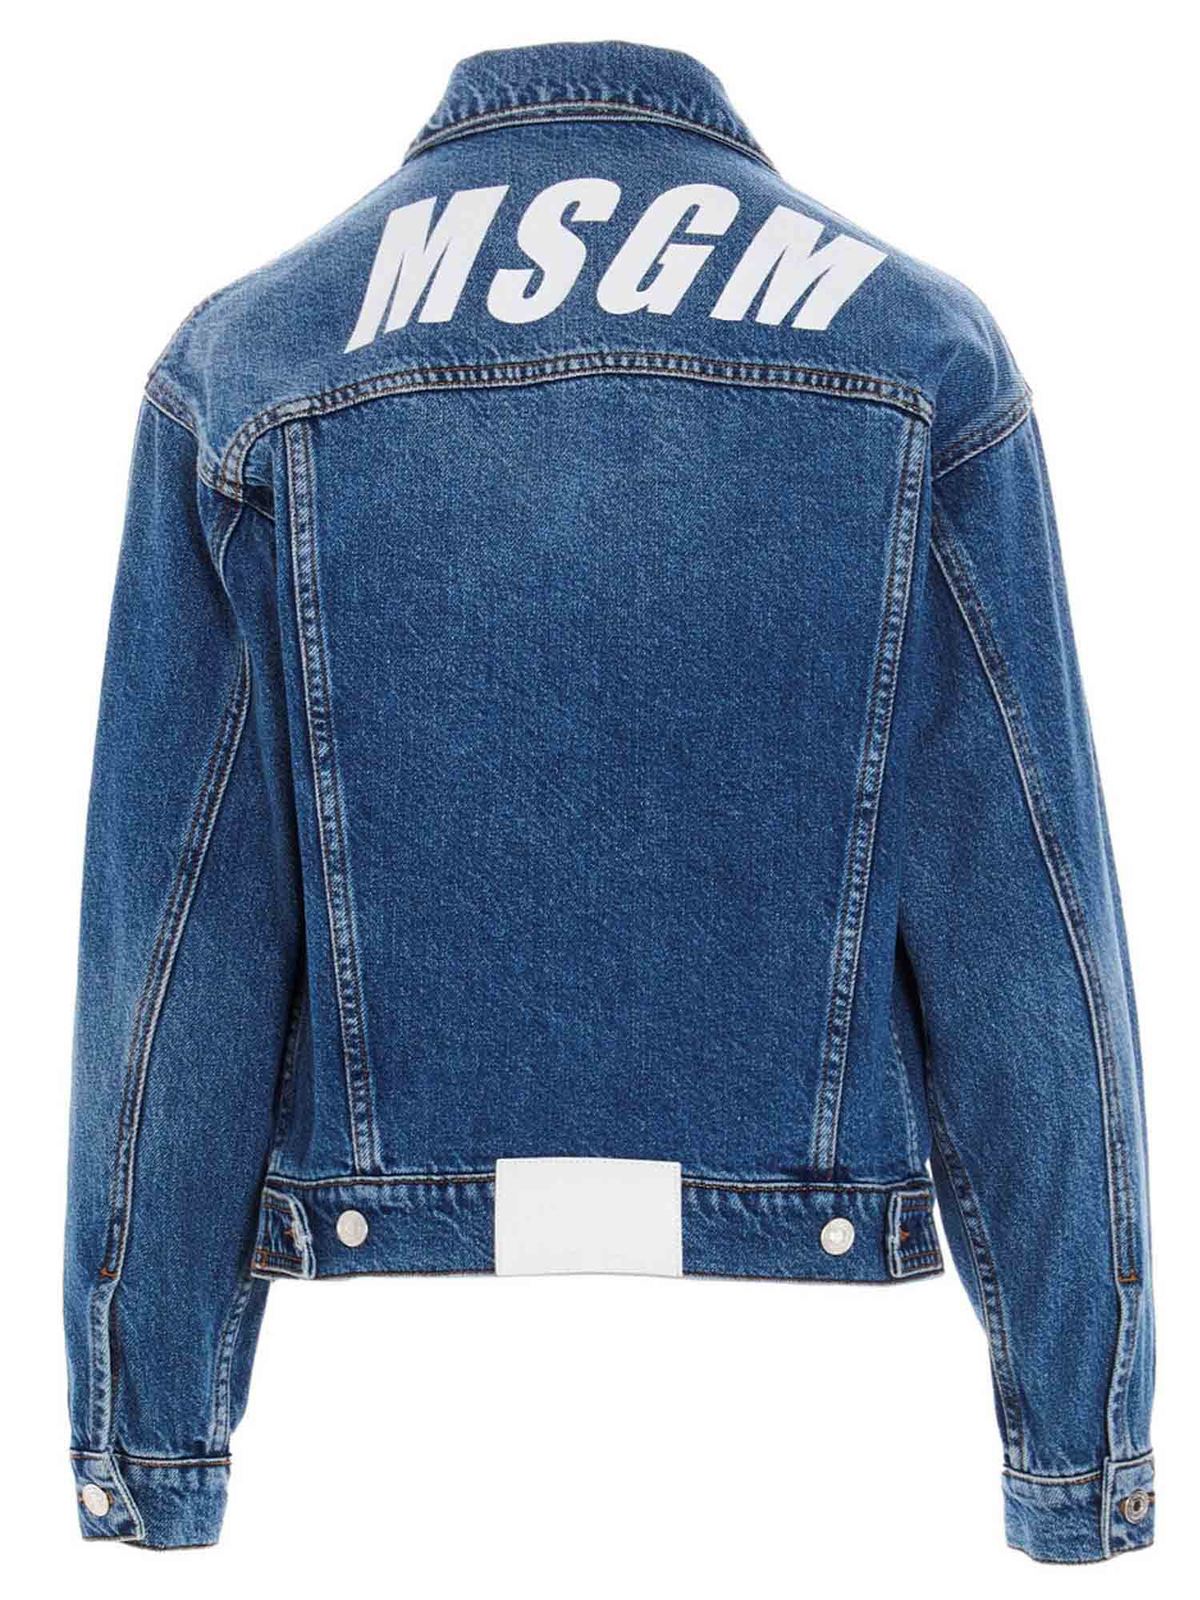 M.S.G.M. - Contrasting logo denim jacket in blue - denim jacket ...